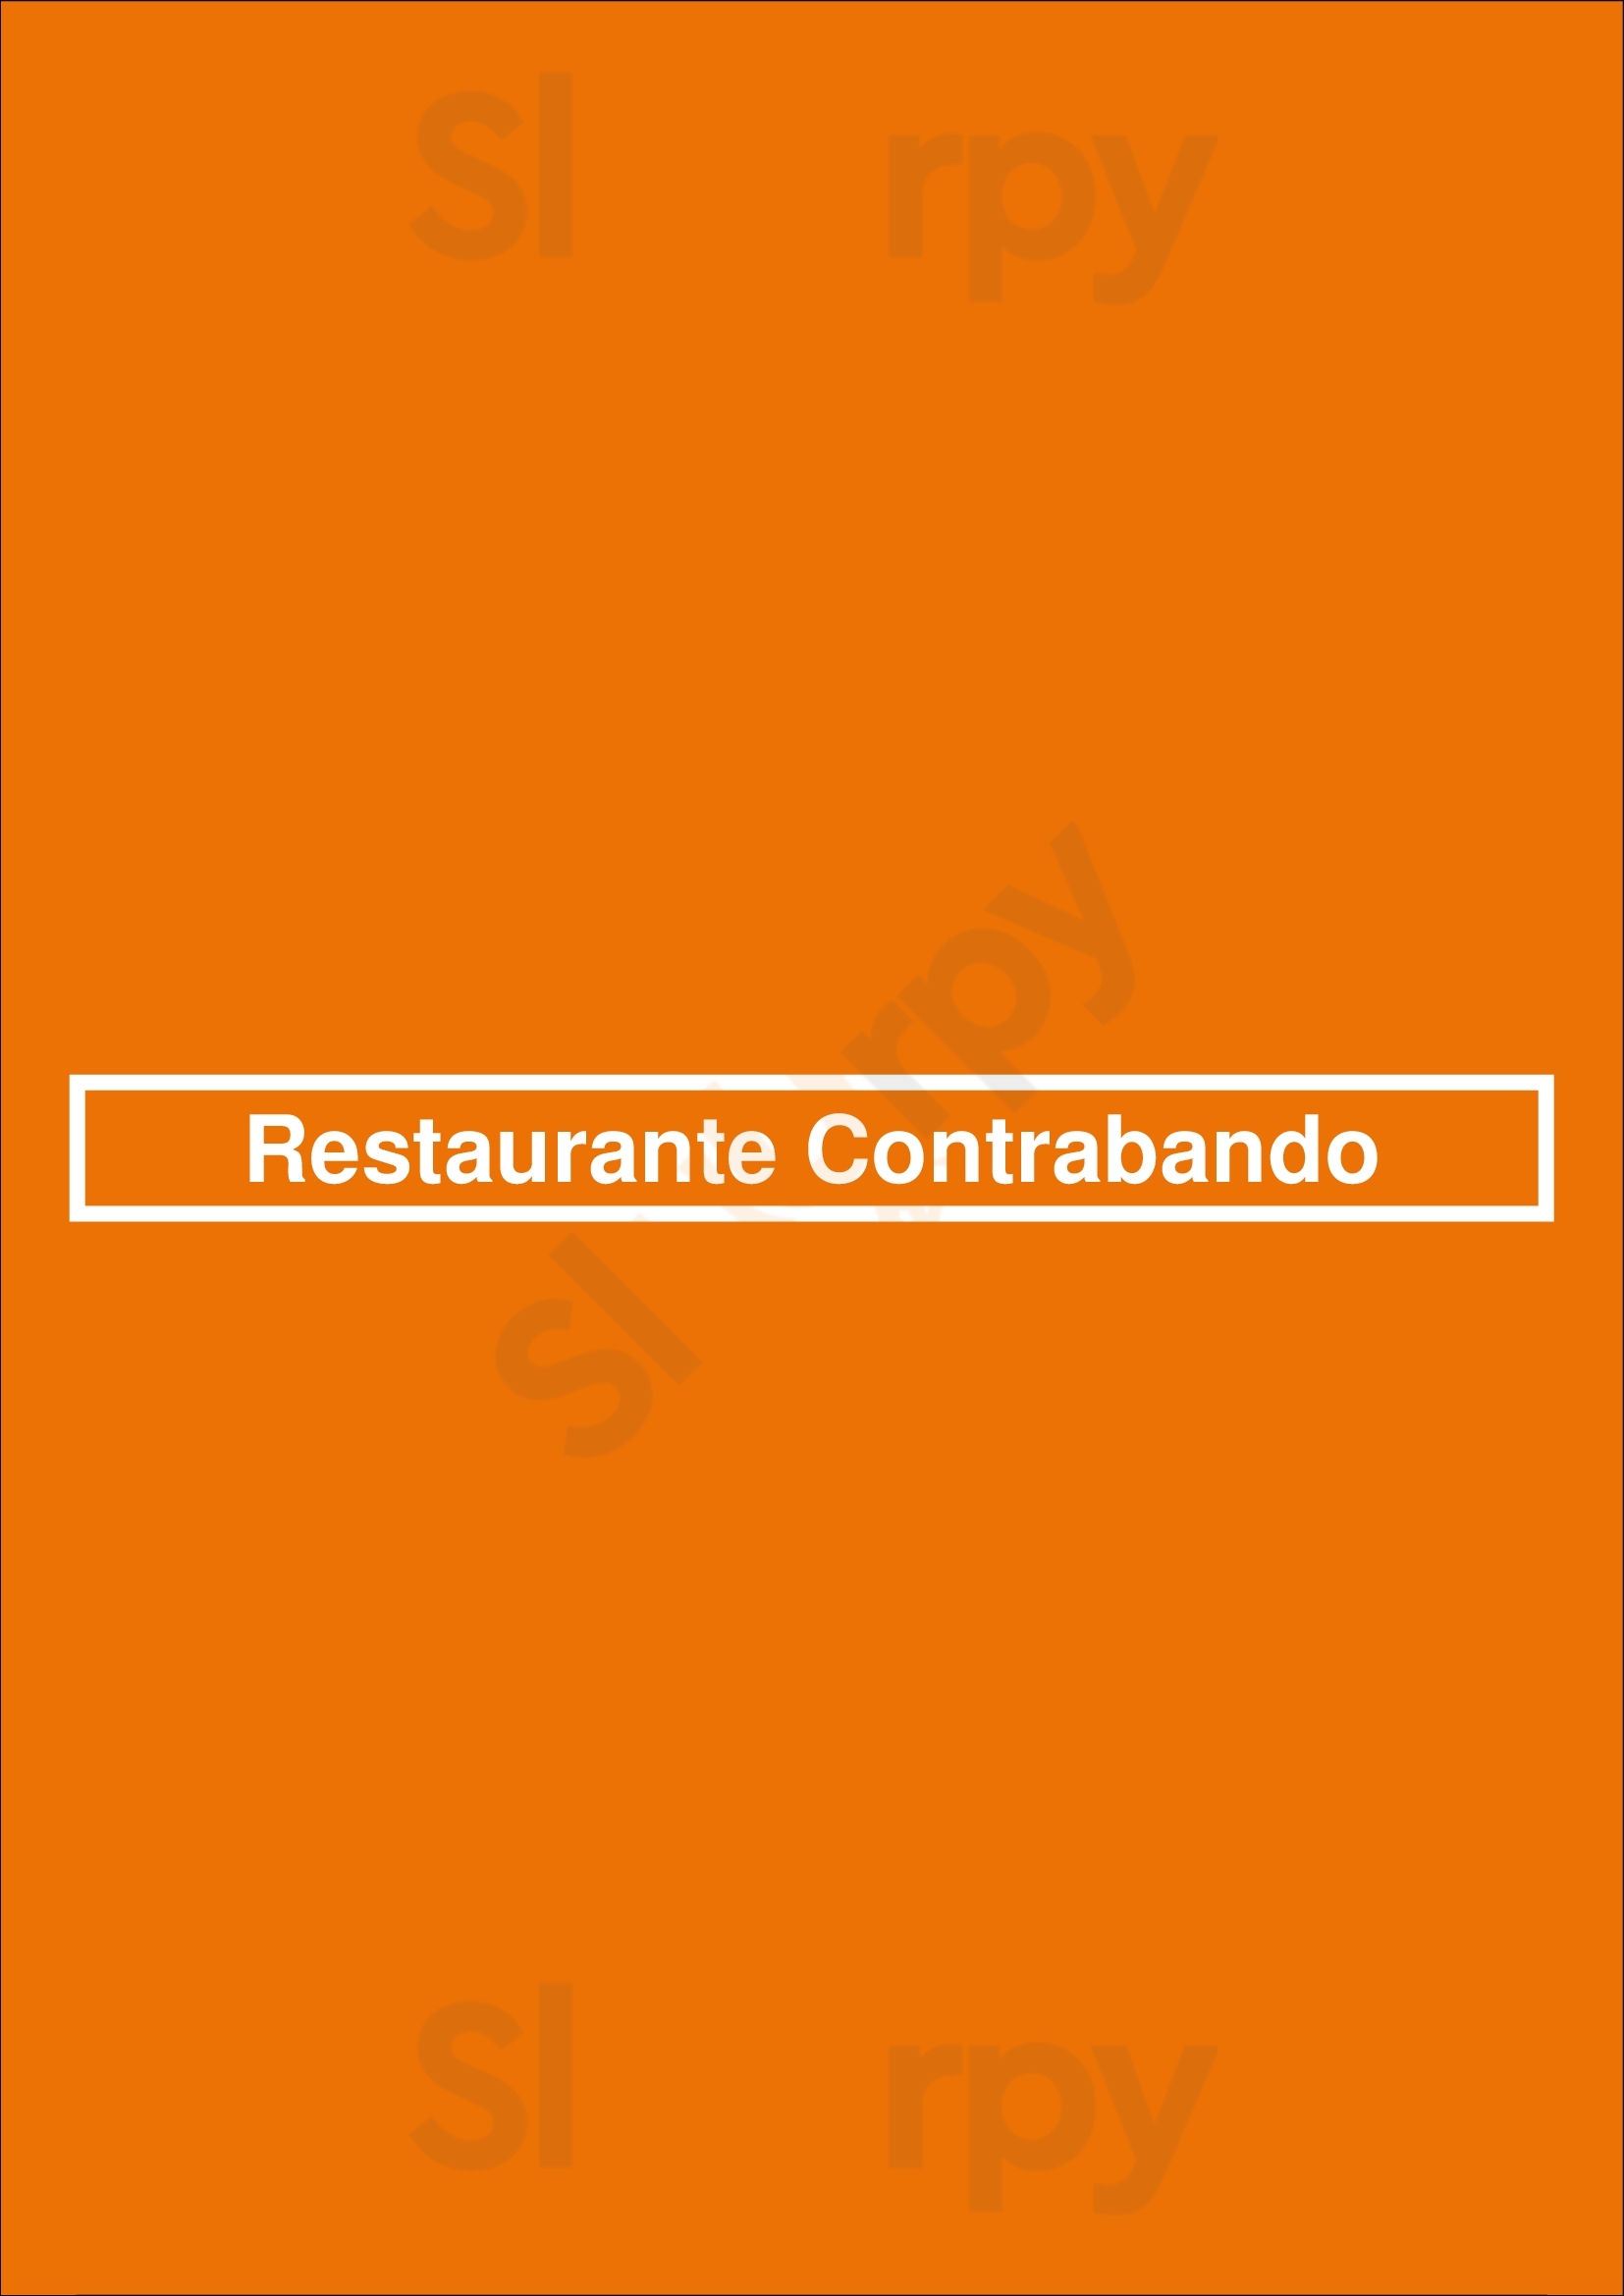 Restaurante Contrabando Lisboa Menu - 1